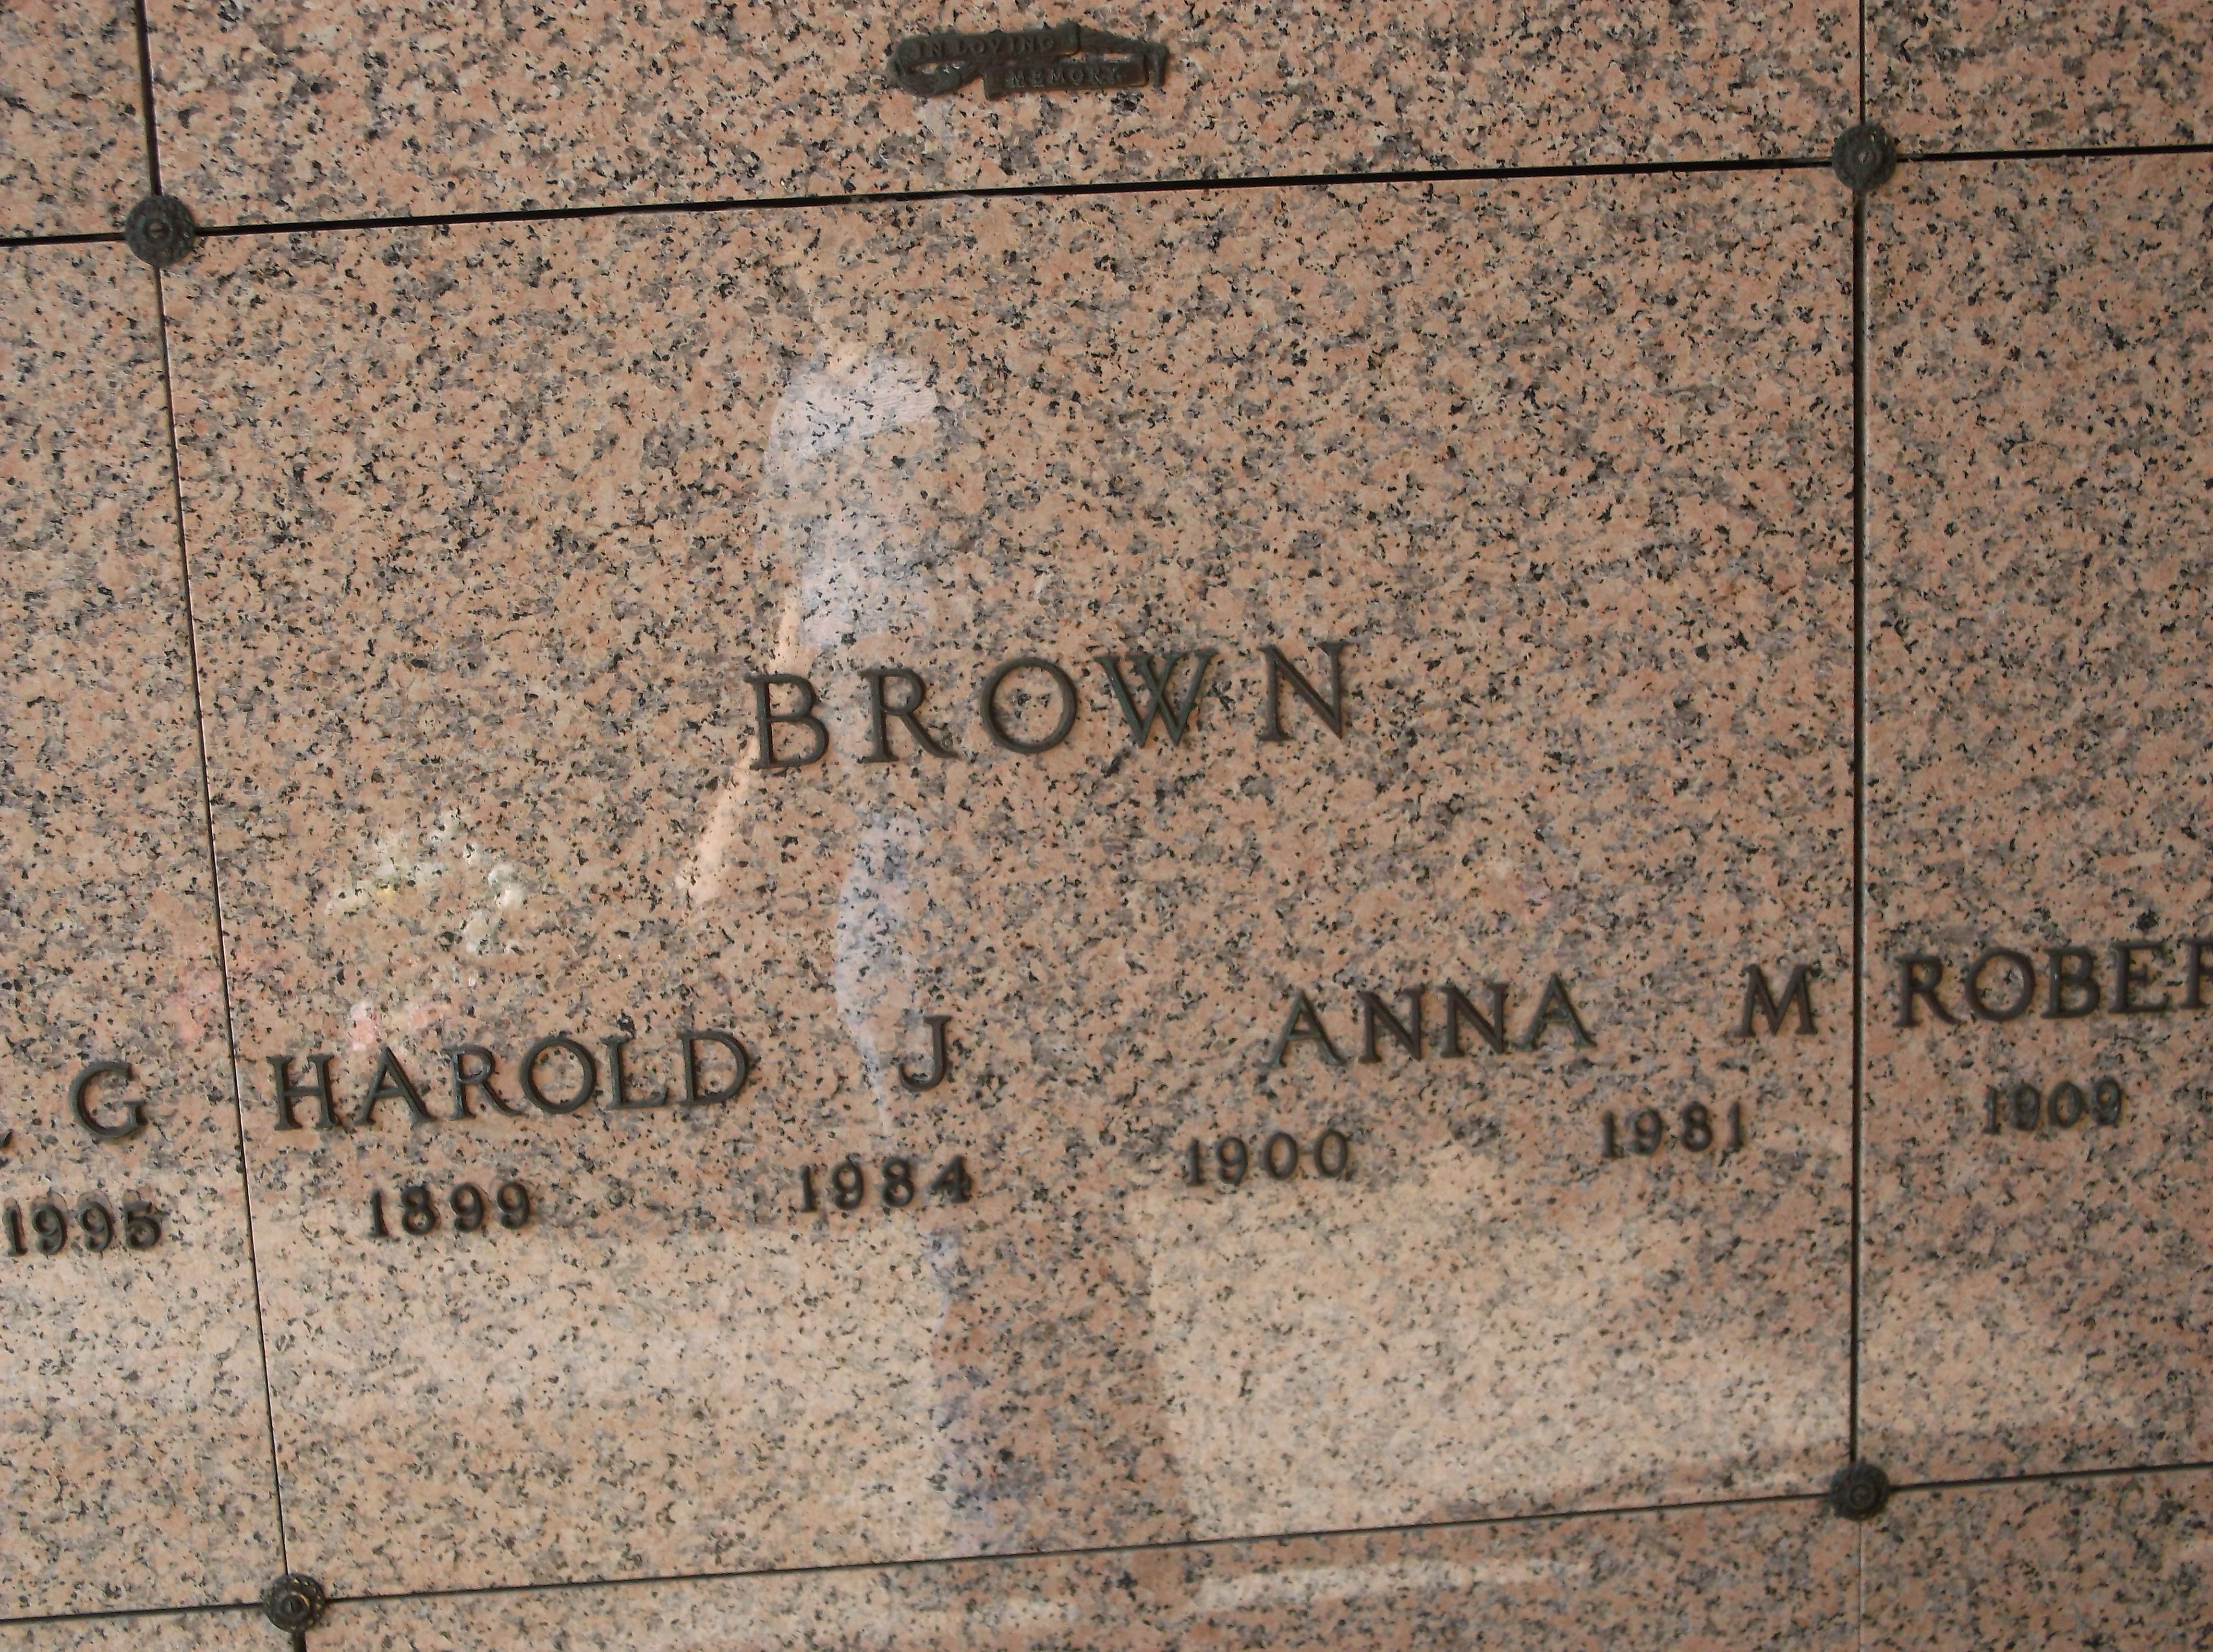 Harold J Brown